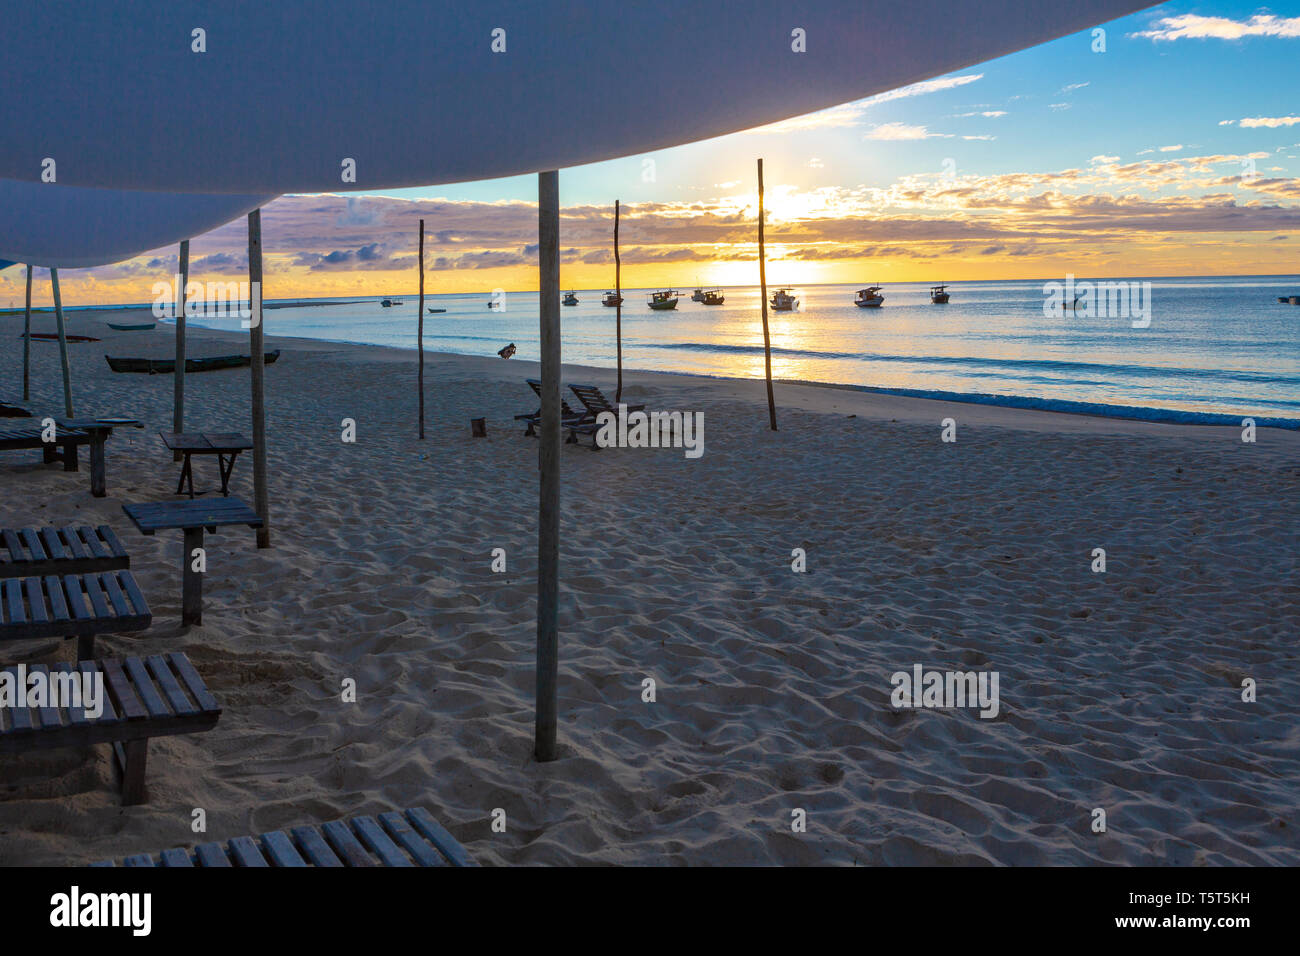 Playa con sillas de madera y una tienda de barcos y la puesta de sol en el fondo.Concepto de vacaciones, paz y relajación. Ponta do Corumbau, Bahia, Brasil Foto de stock